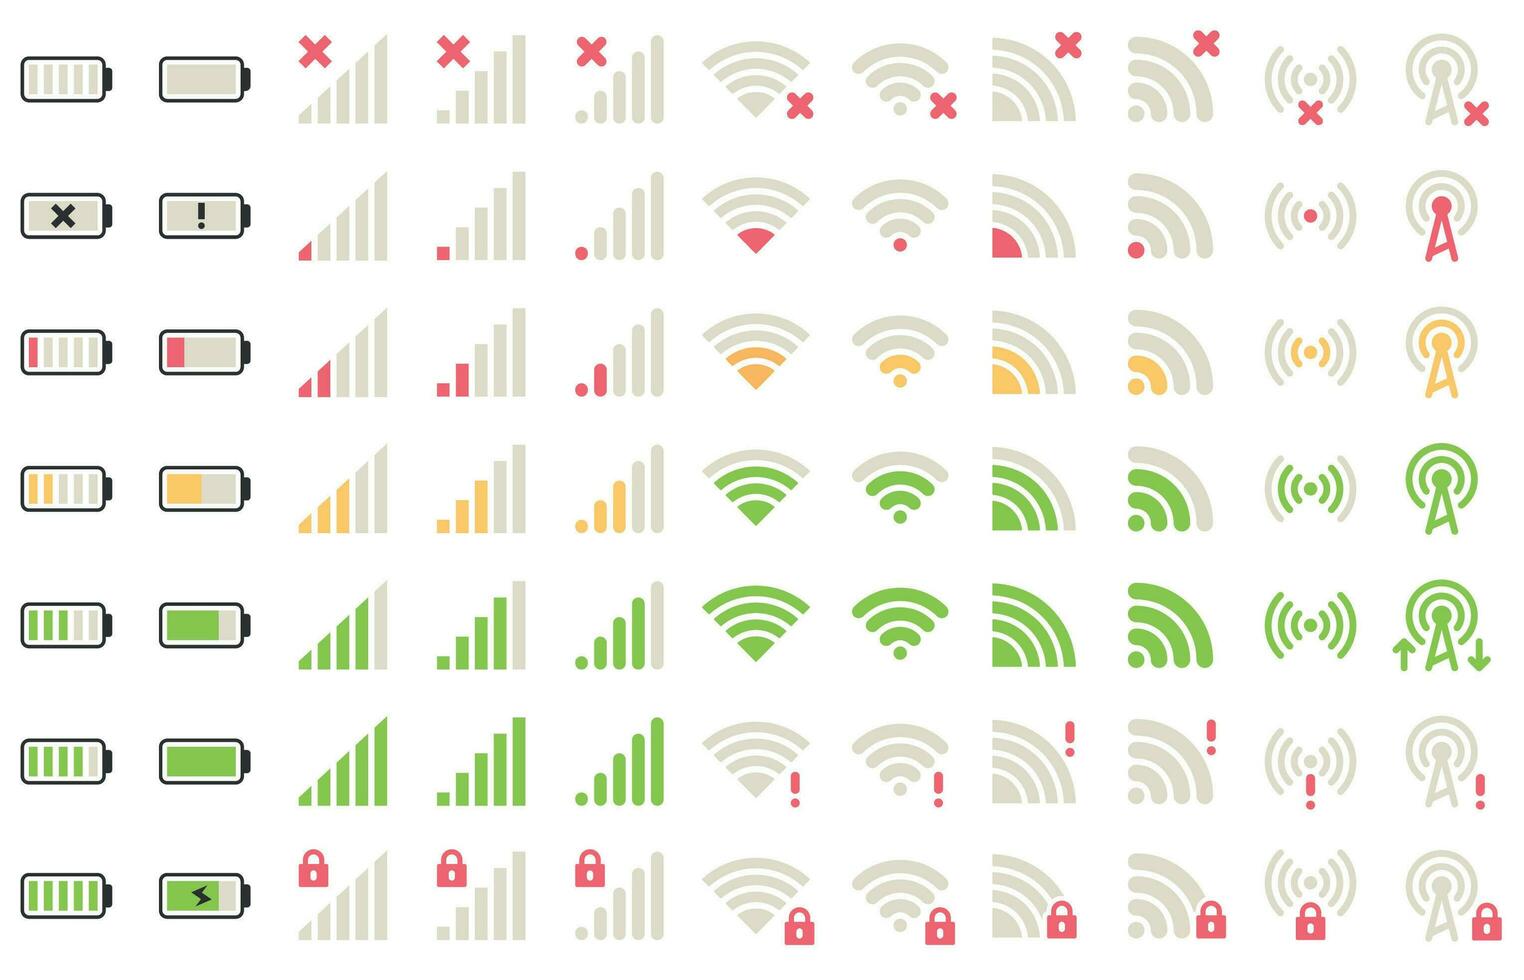 mobil nivå ikoner. nätverk signal, wiFi förbindelse och batteri nivåer ikon. gadgetar batterier, telefon signaler piktogram vektor uppsättning